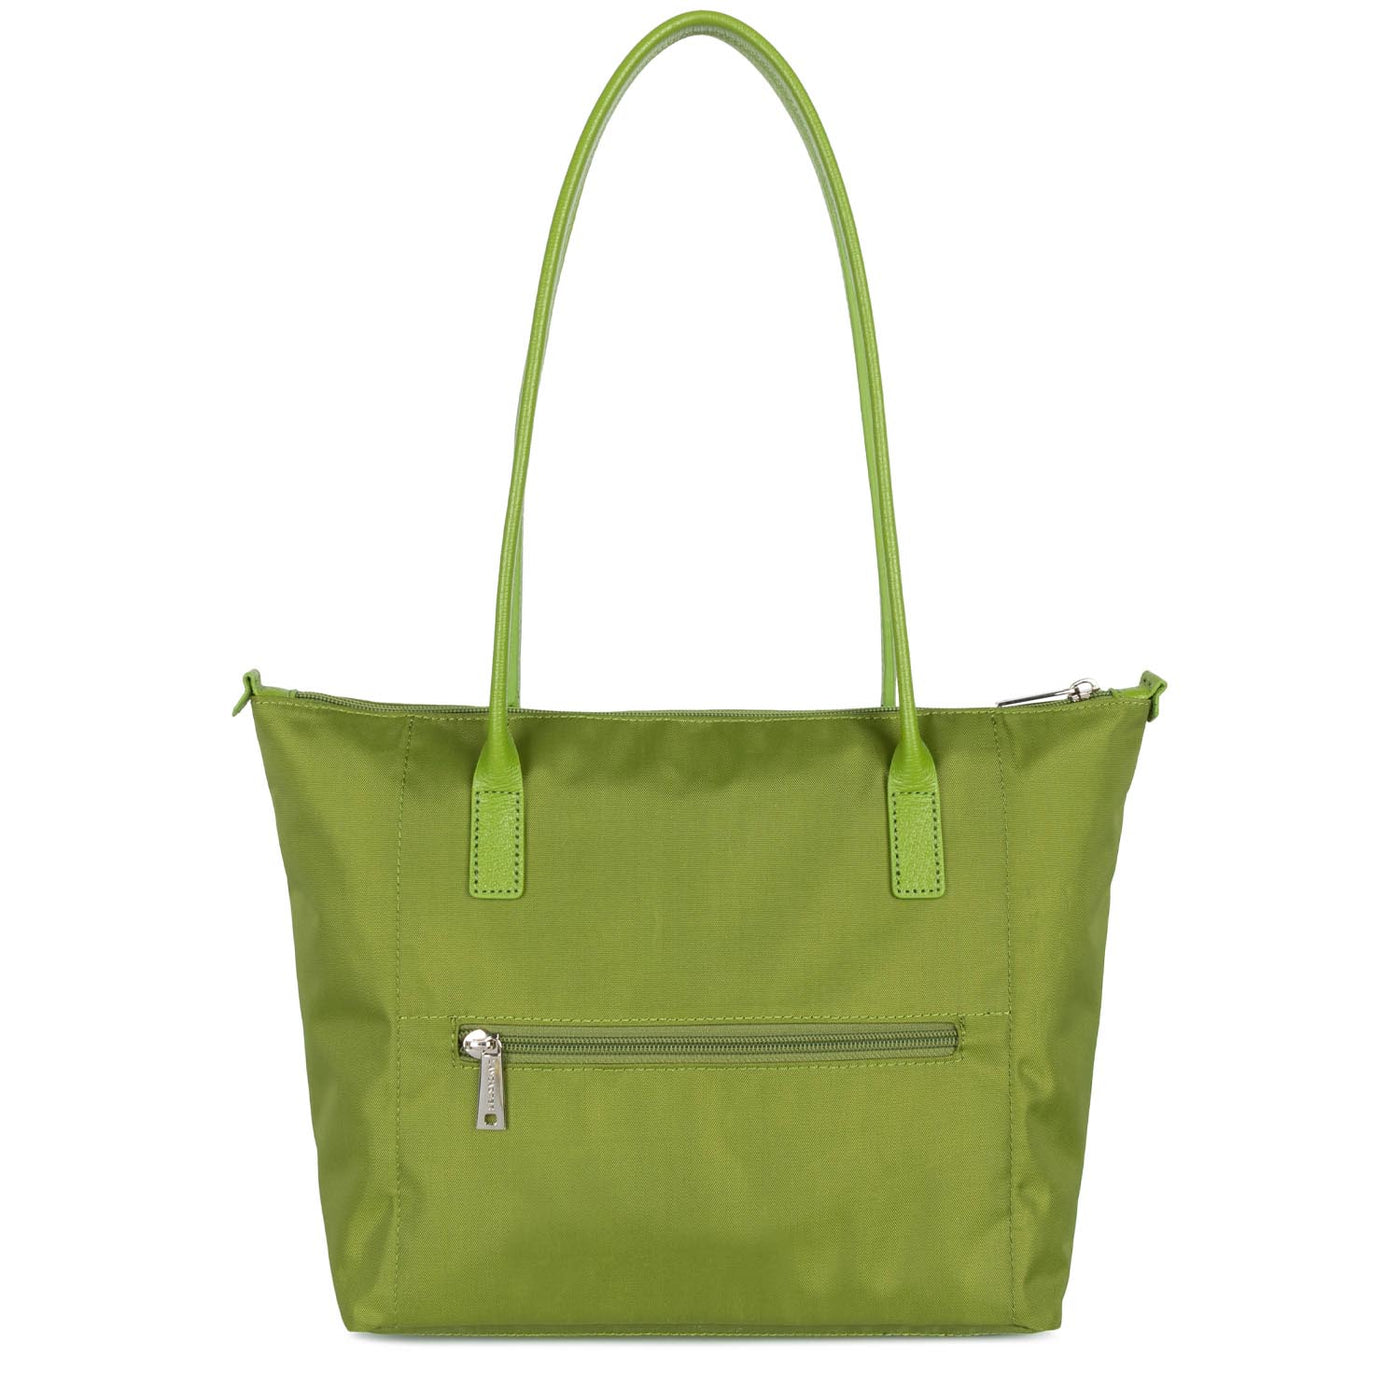 m tote bag - smart kba #couleur_pistache